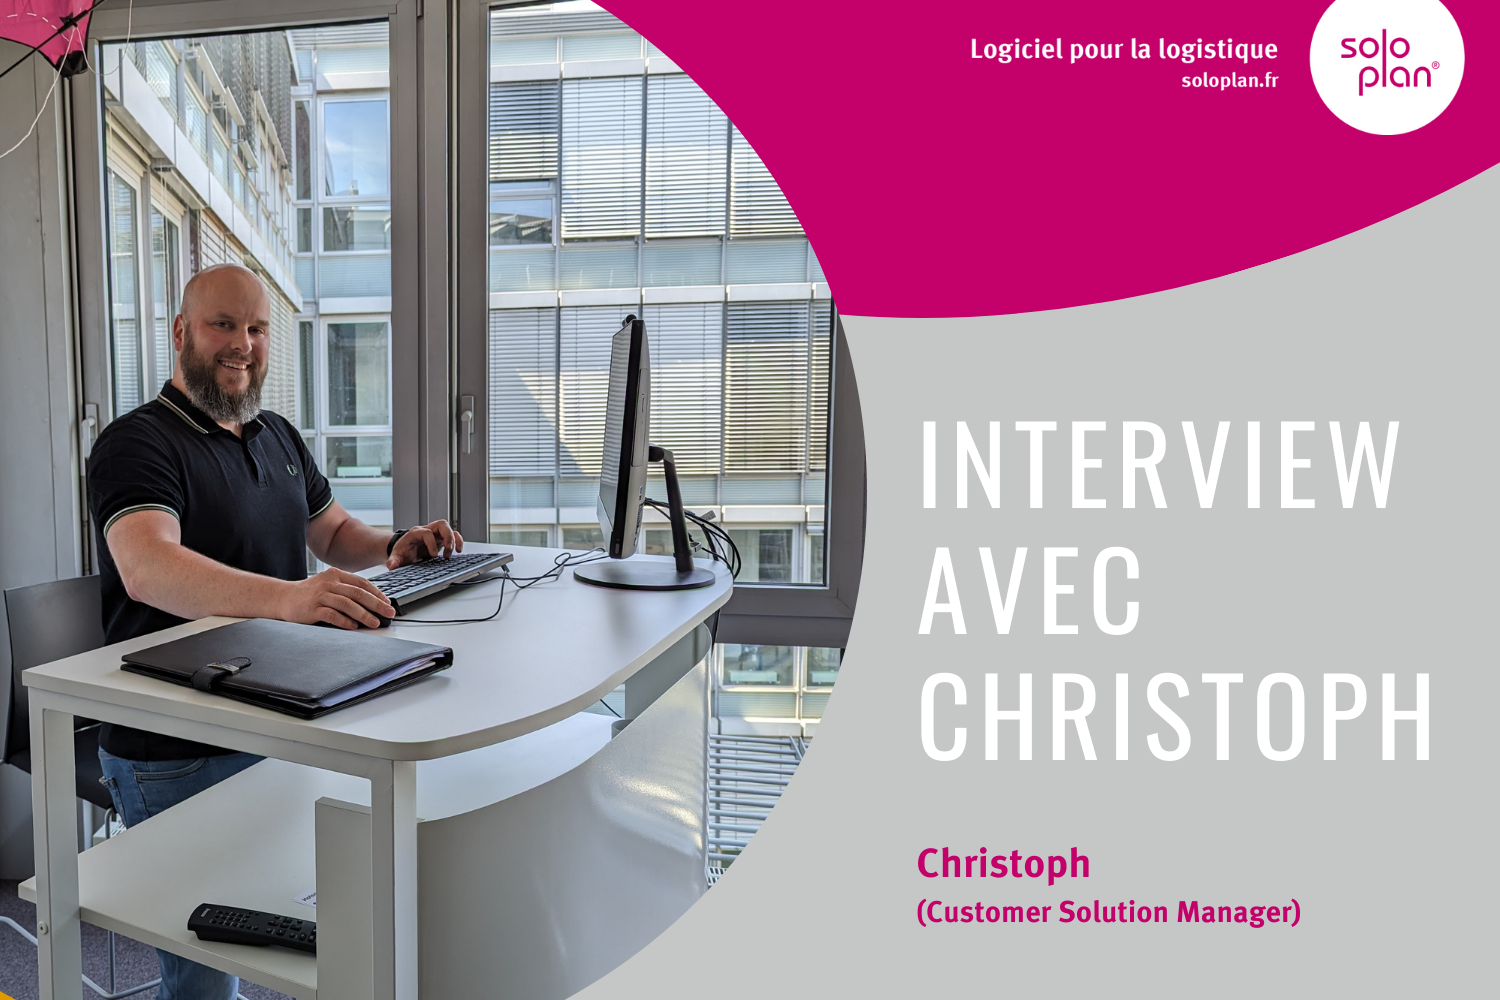 Interview avec Christoph : Un aperçu du travail d’un responsable de solutions clients (Customer Solution Manager) chez Soloplan